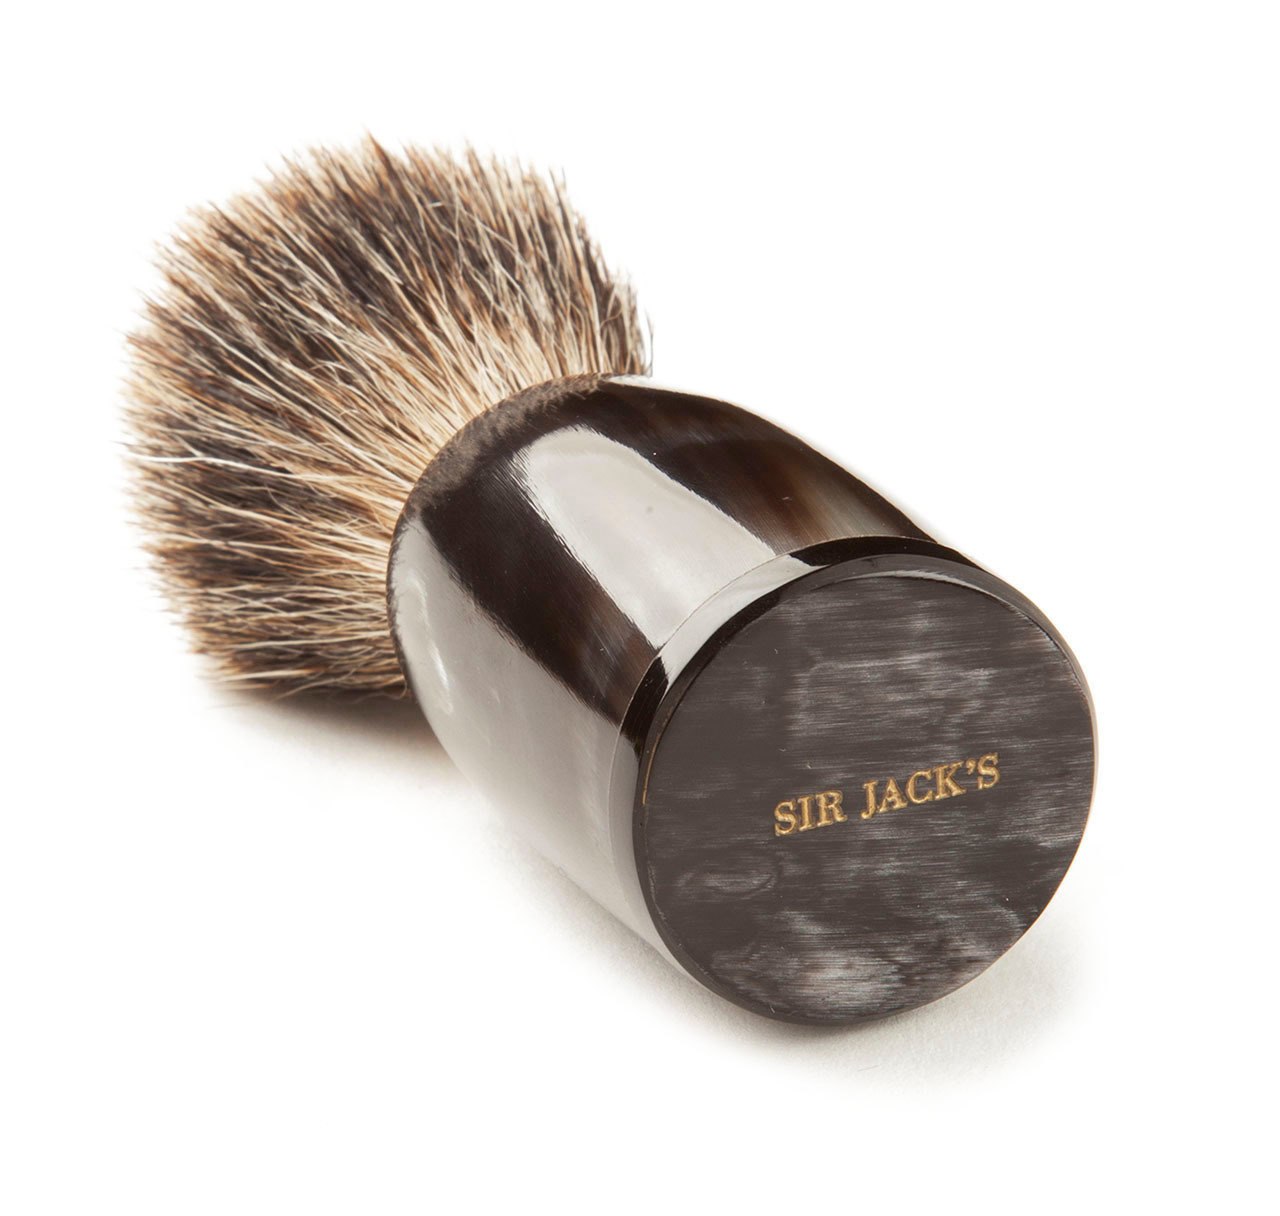 Sir Jack's Ox Horn Super Badger Shaving Brush